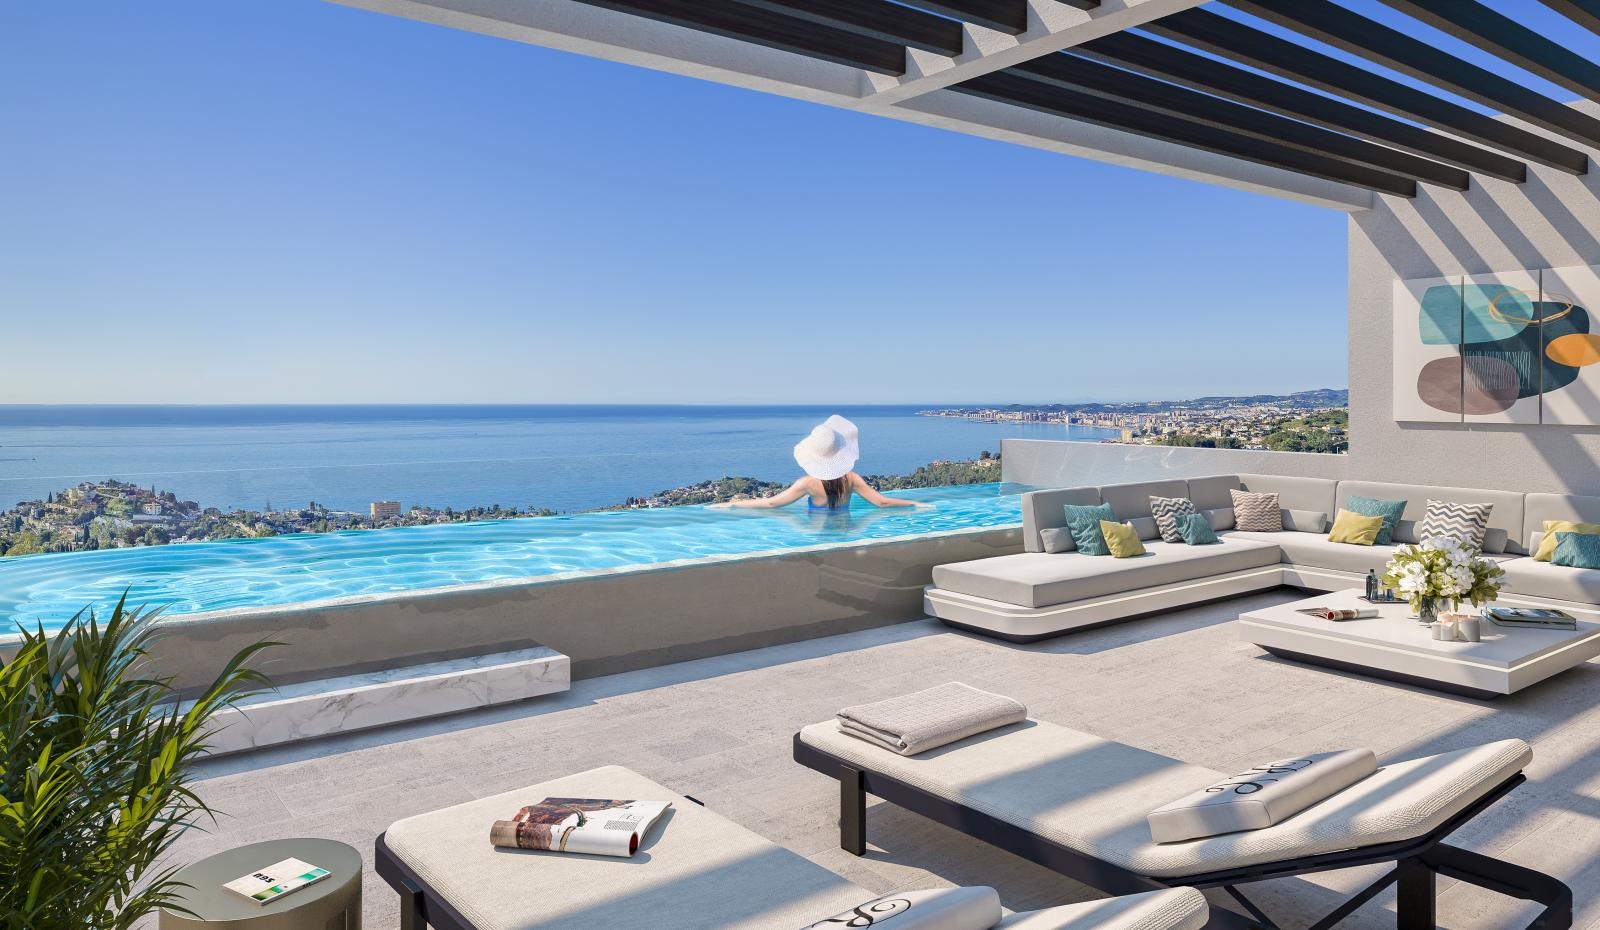 Excellentes maisons de luxe avec une vue imprenable sur la mer!